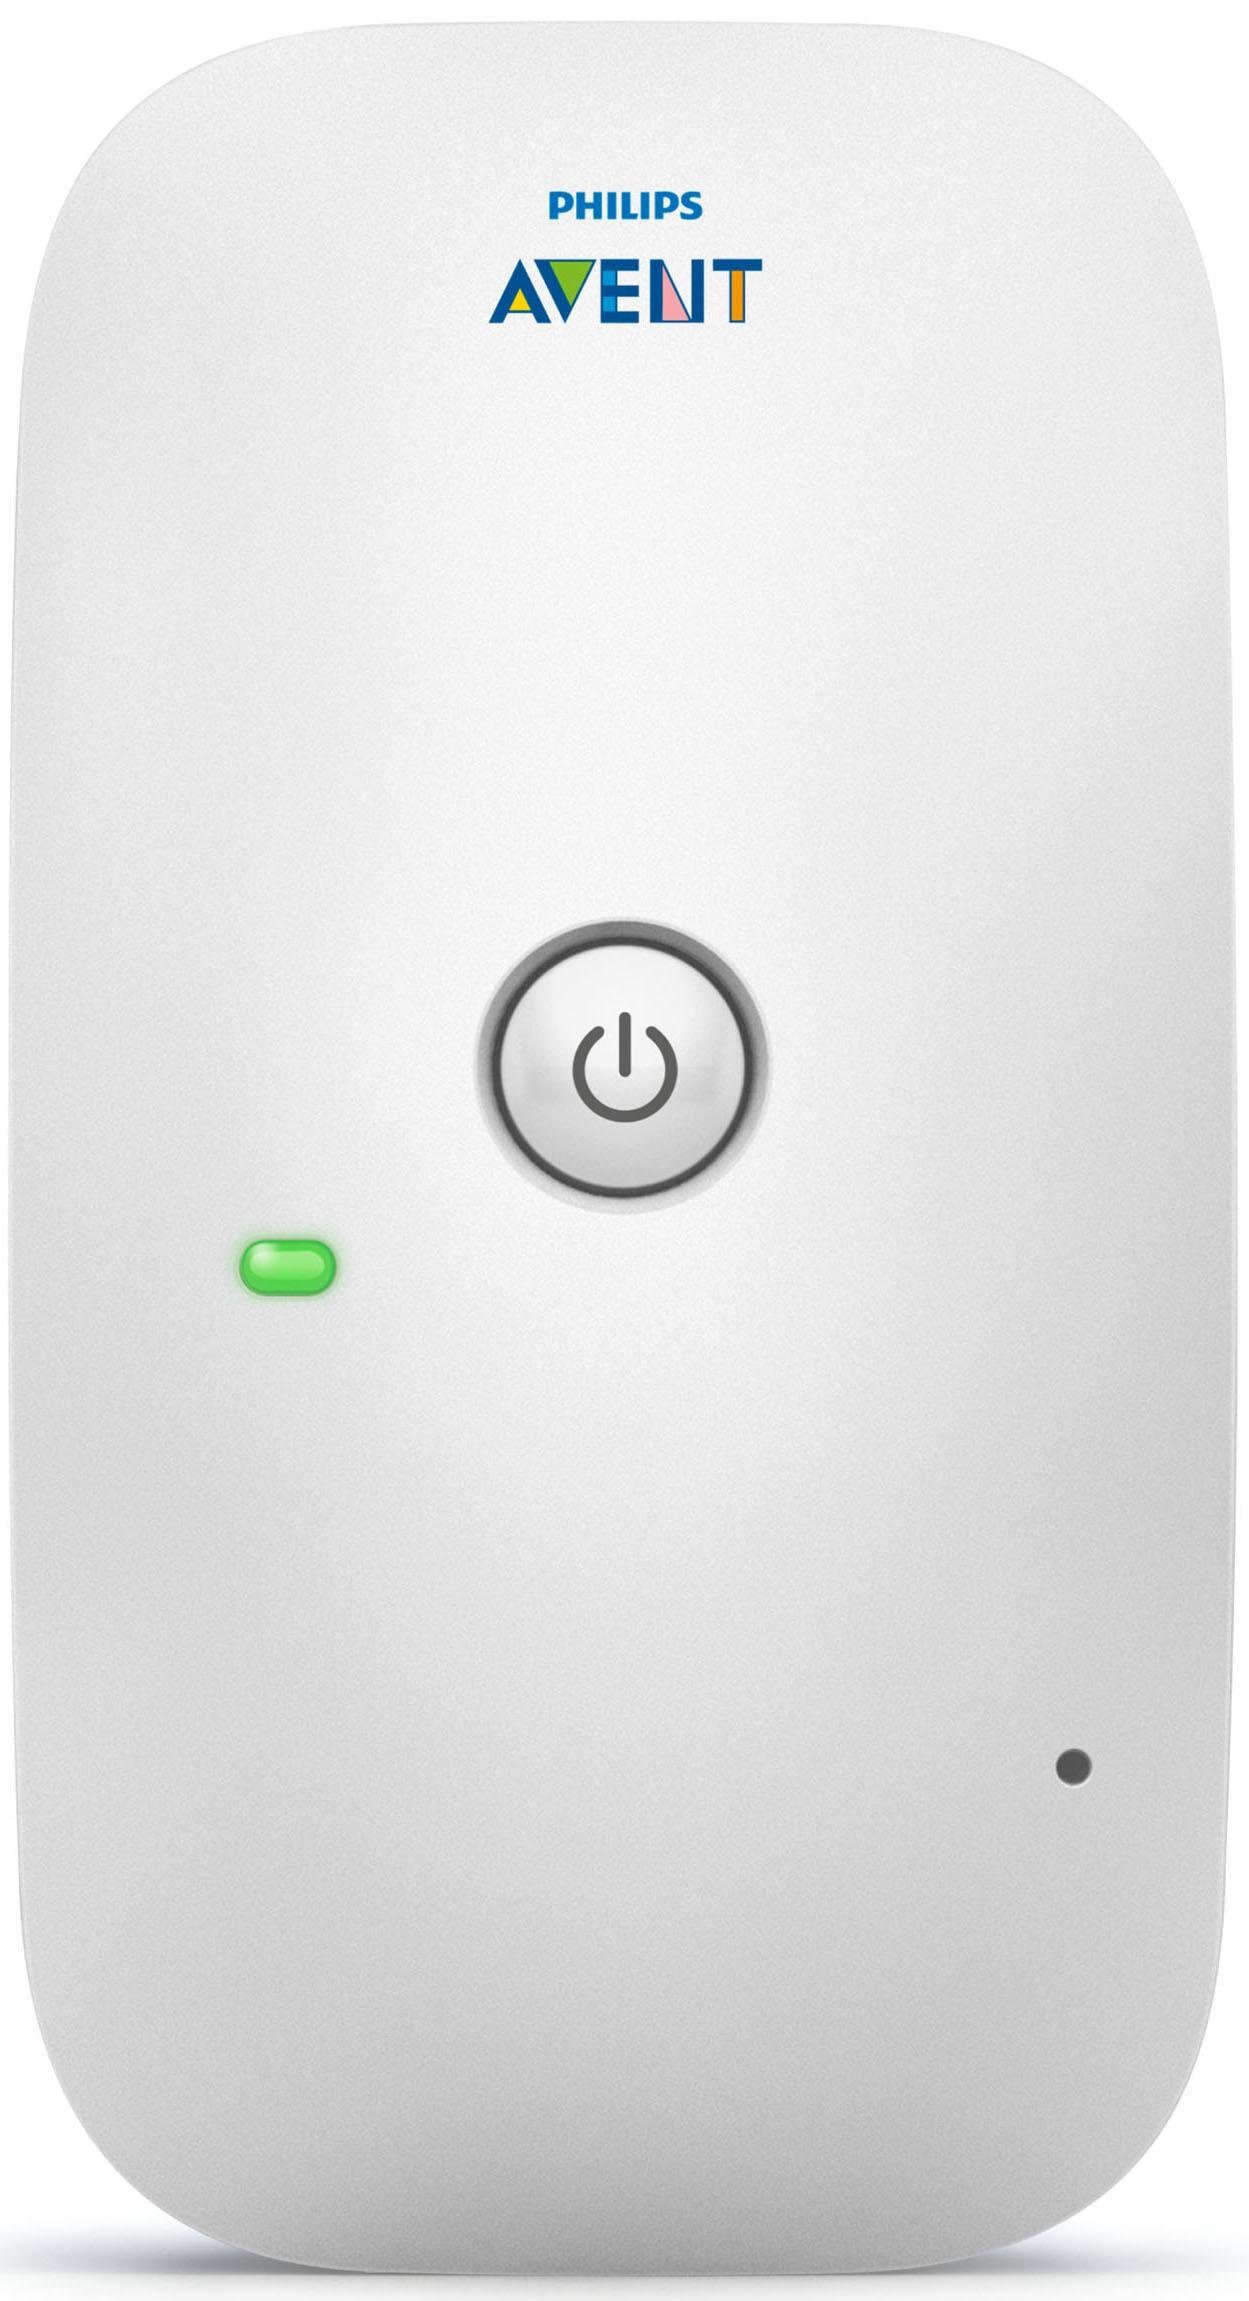 Philips AVENT Babyphone Smart und mit Nachtlicht SCD503/26, ECO-Modus